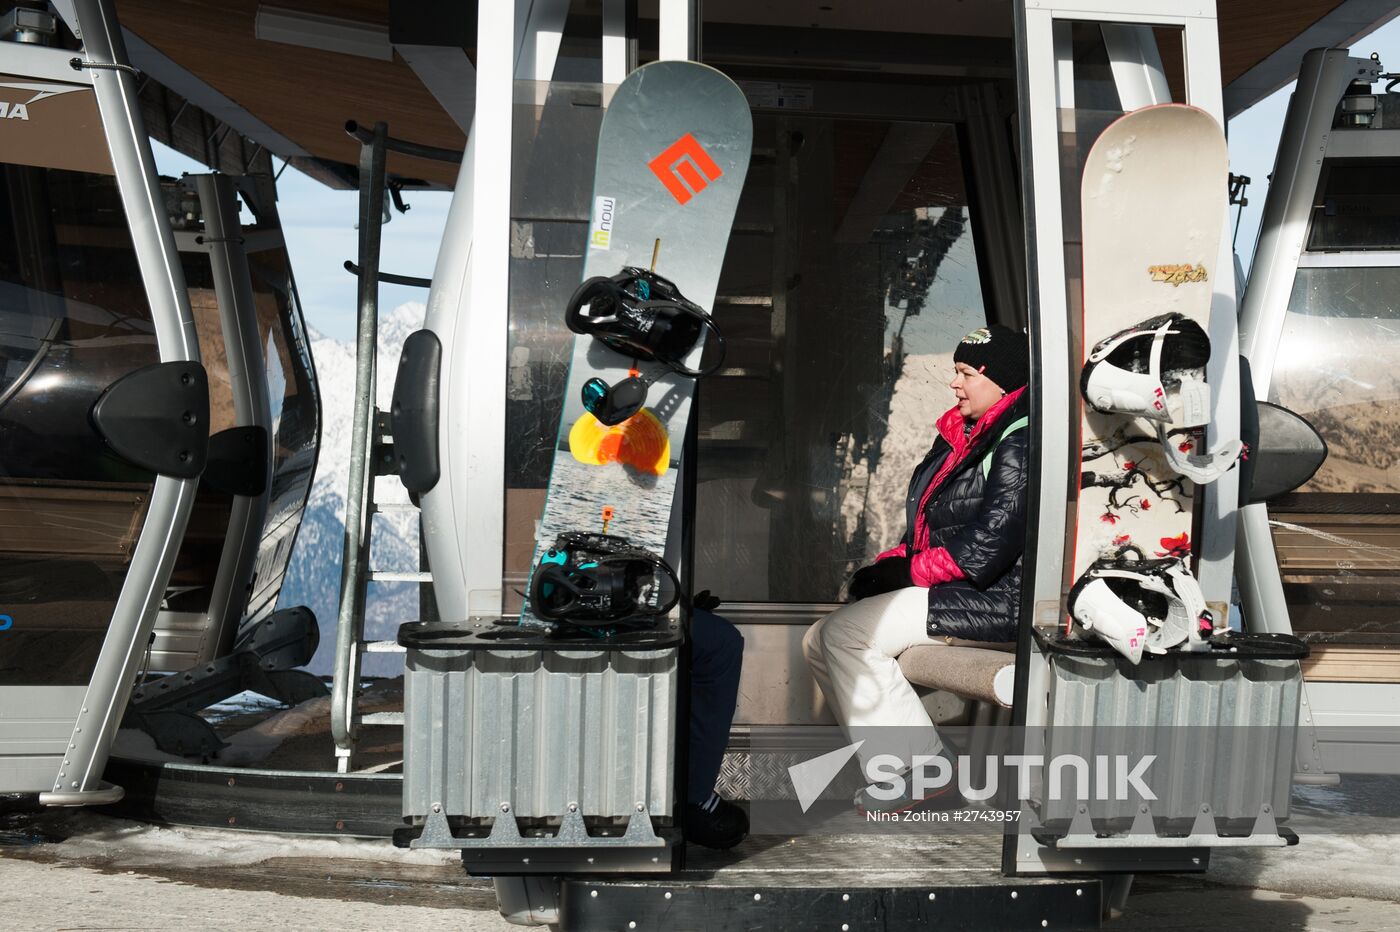 Ski season begins in Sochi